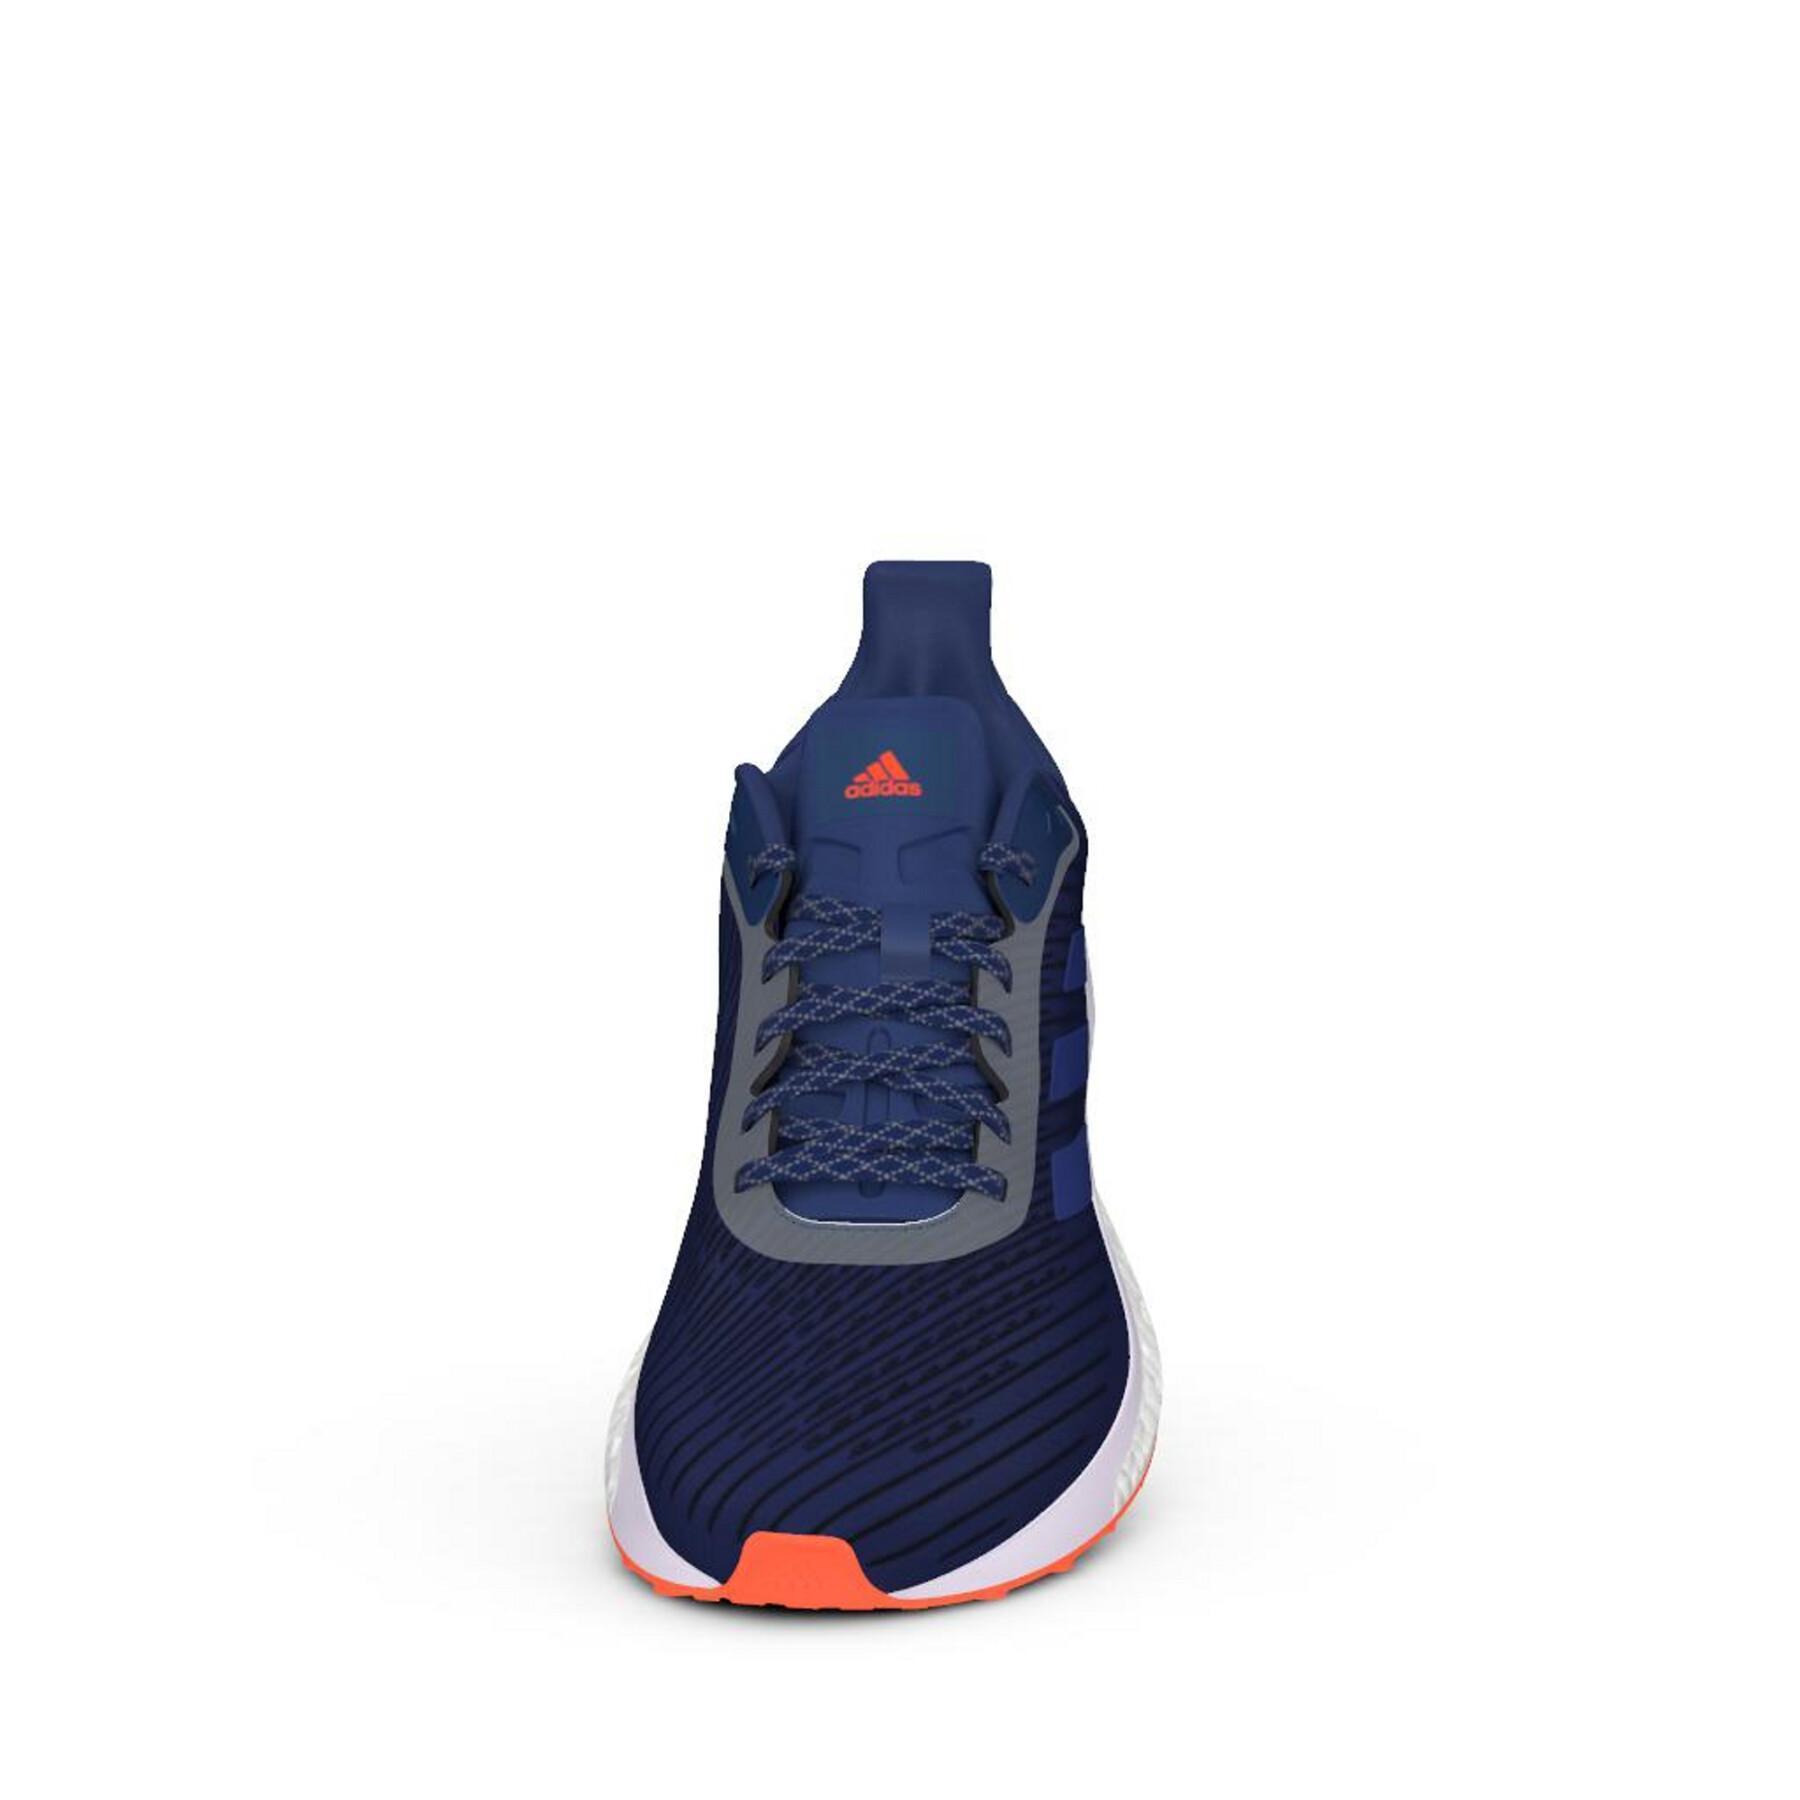 Chaussures de running femme adidas Solar Drive 19